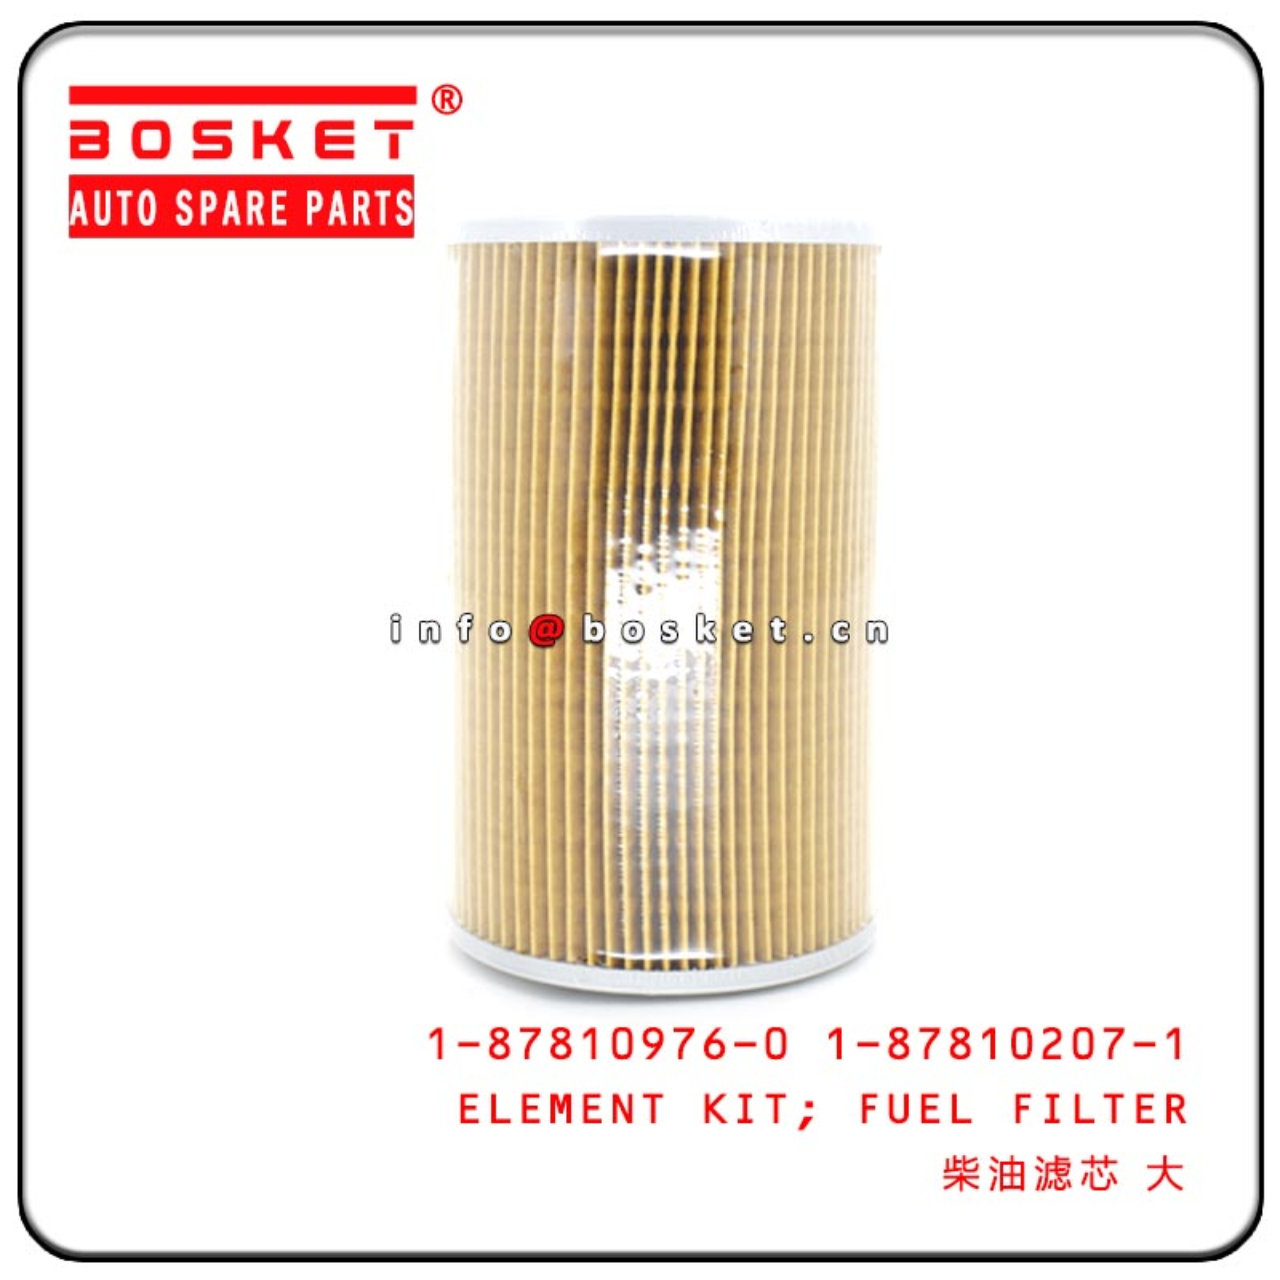 1-87810976-0 1-87810207-1 1878109760 1878102071 Fuel Filter Element Kit Suitable For ISUZU 10PE1 CXZ